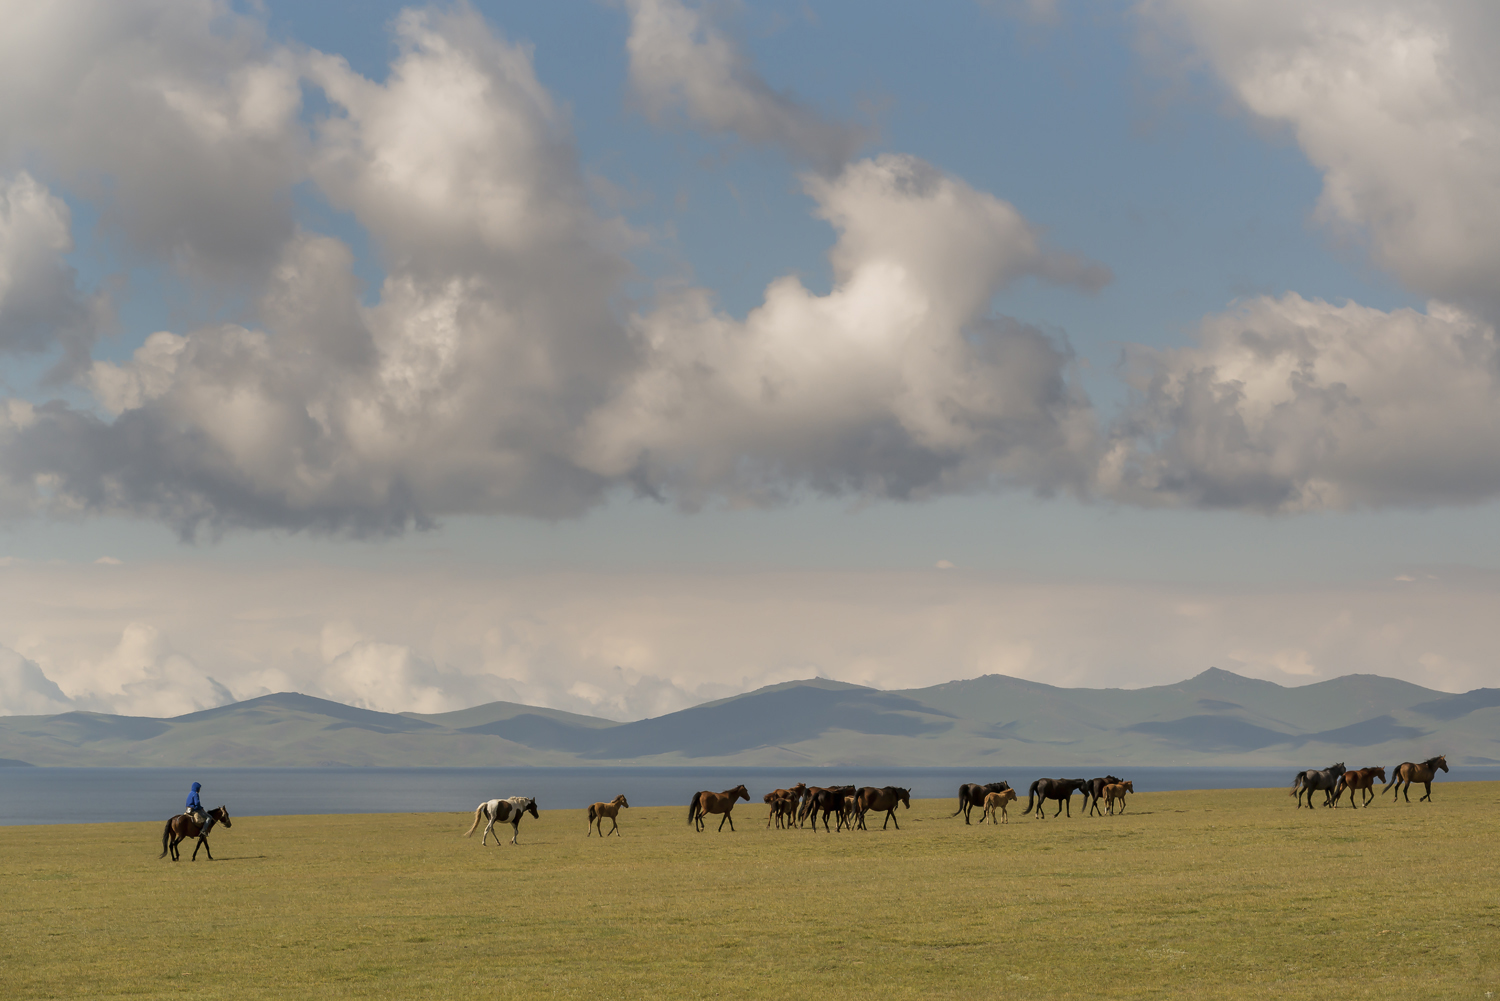 kyrgyzstan-nomads-lake-song-kul-jo-kearney-video-photography-soviet-herding-horses.jpg